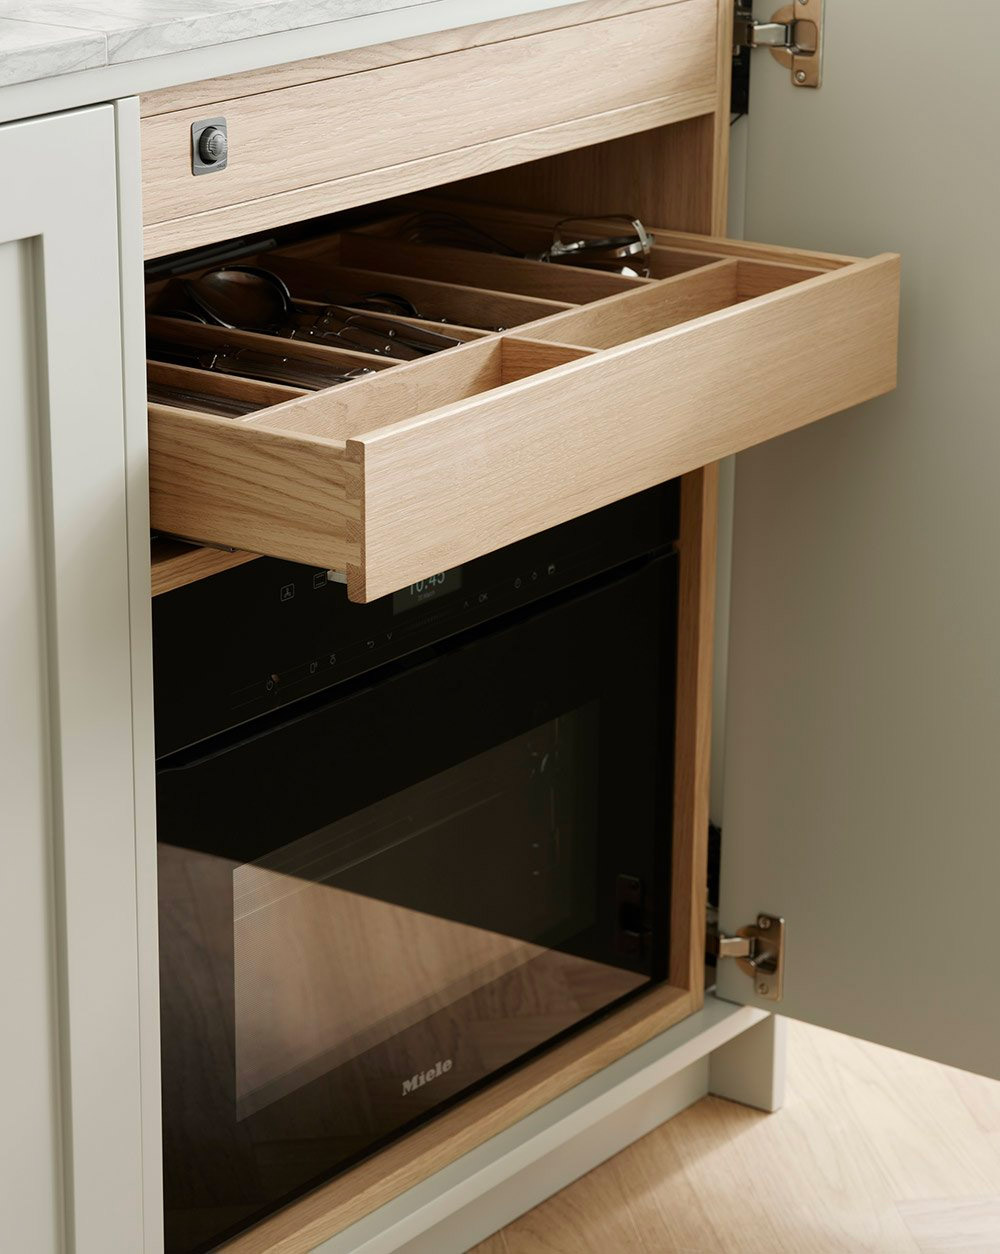 De oven is verborgen in een van de keukenkasten, samen met lades in massief eikenhout voor bestek en keukengereedschap | Bron: Nordiskakok.se